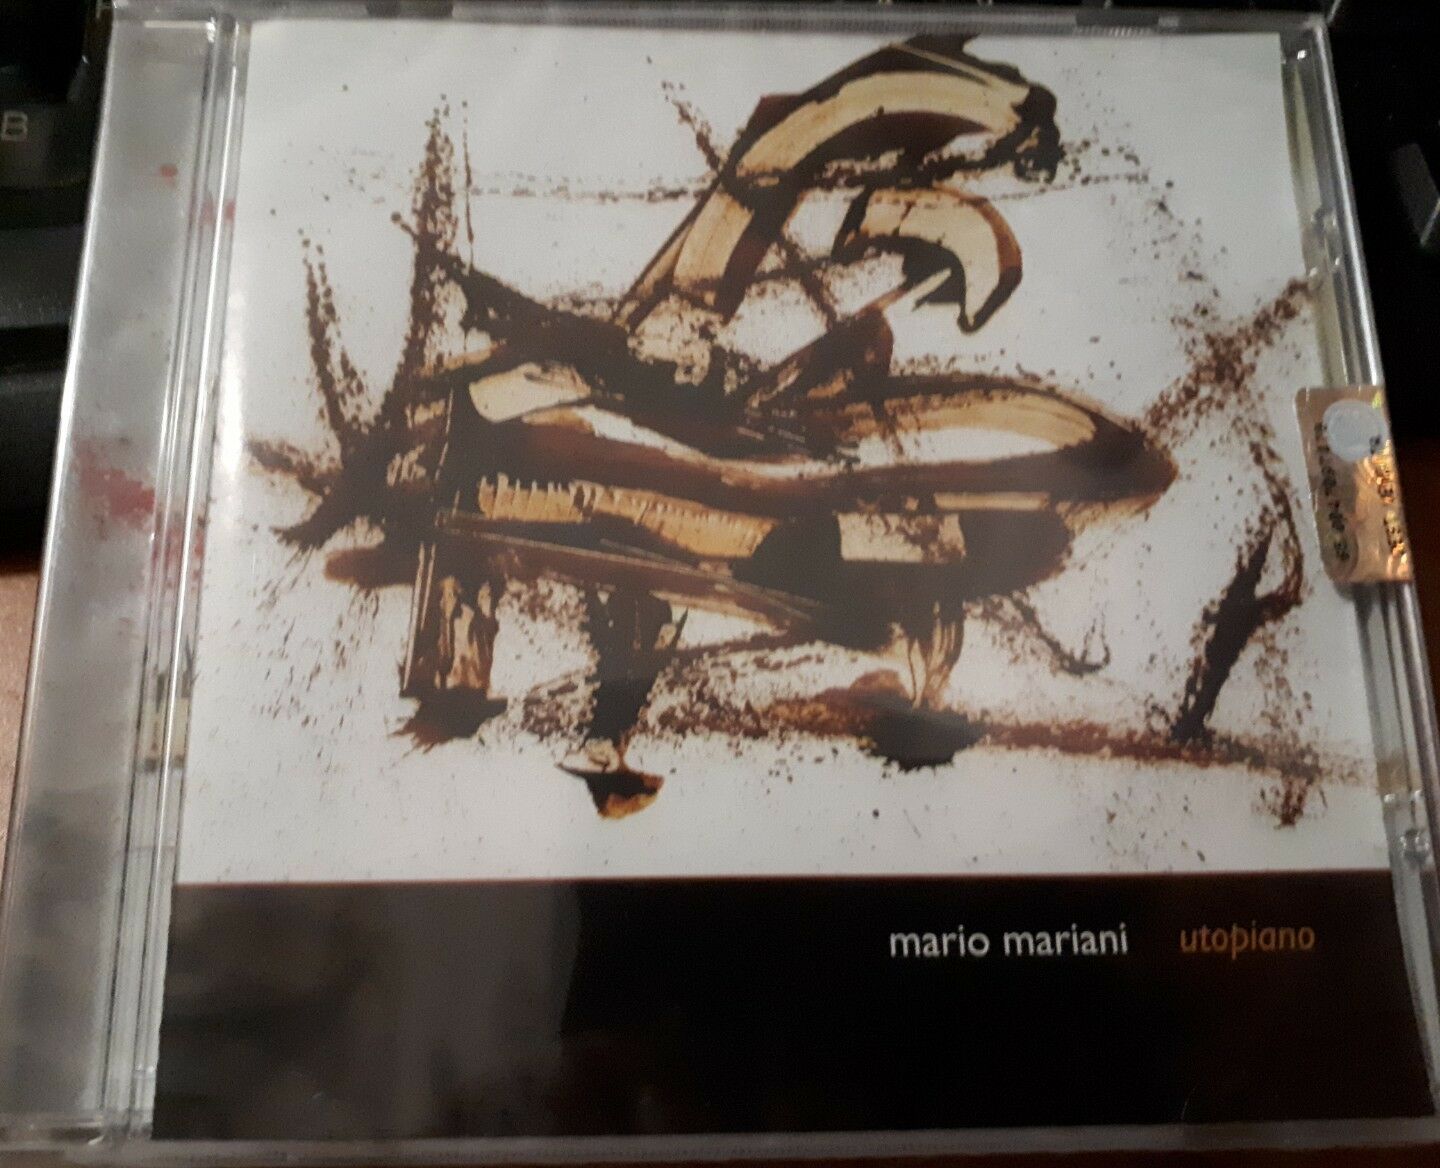 Mario Mariani - Utopiano